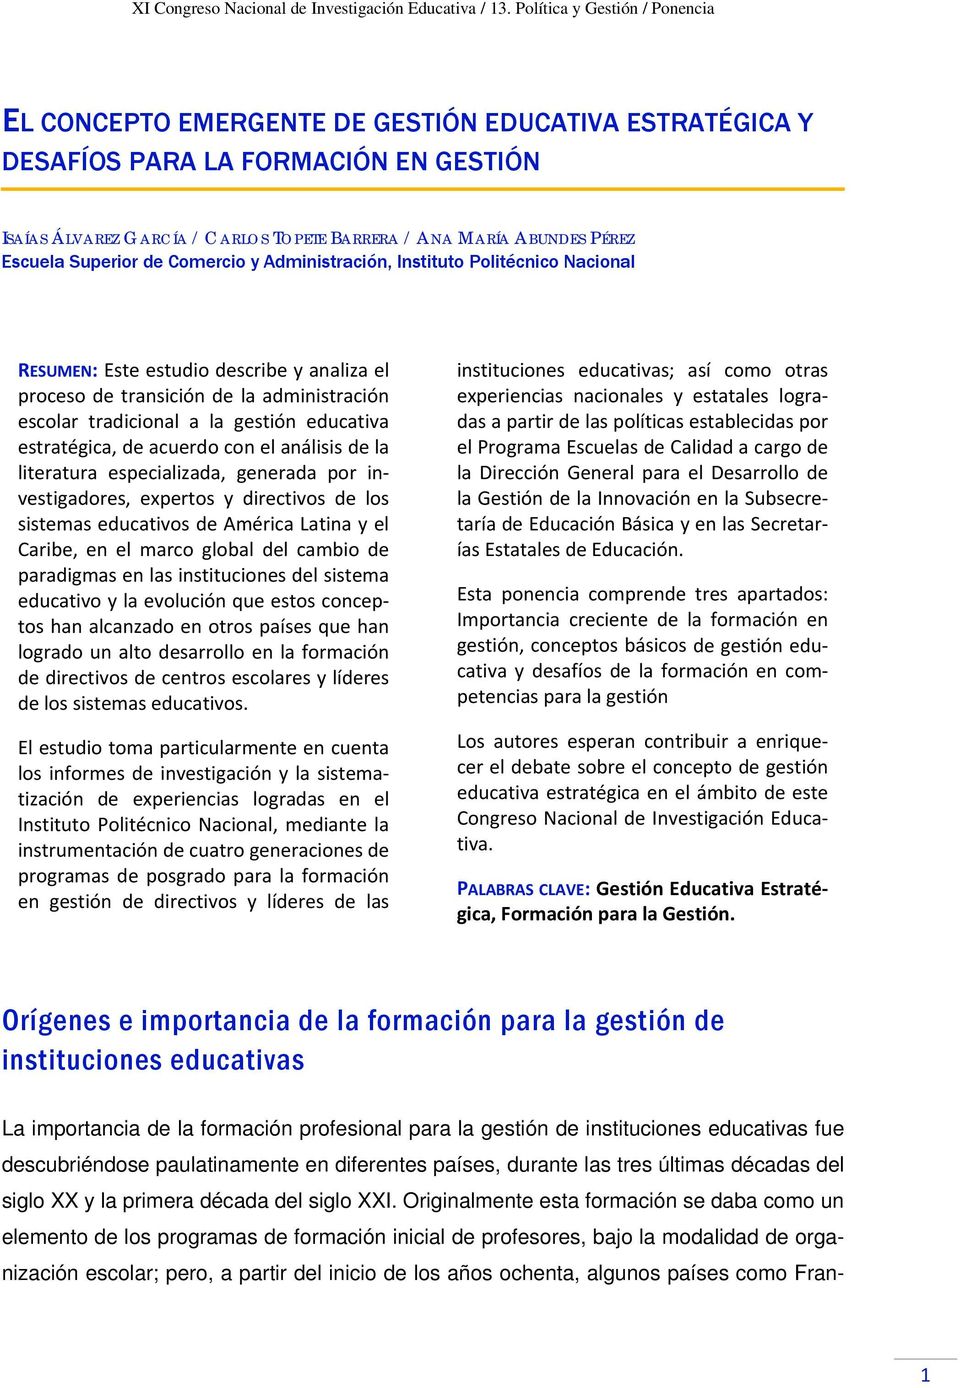 acuerdo con el análisis de la literatura especializada, generada por investigadores, expertos y directivos de los sistemas educativos de América Latina y el Caribe, en el marco global del cambio de